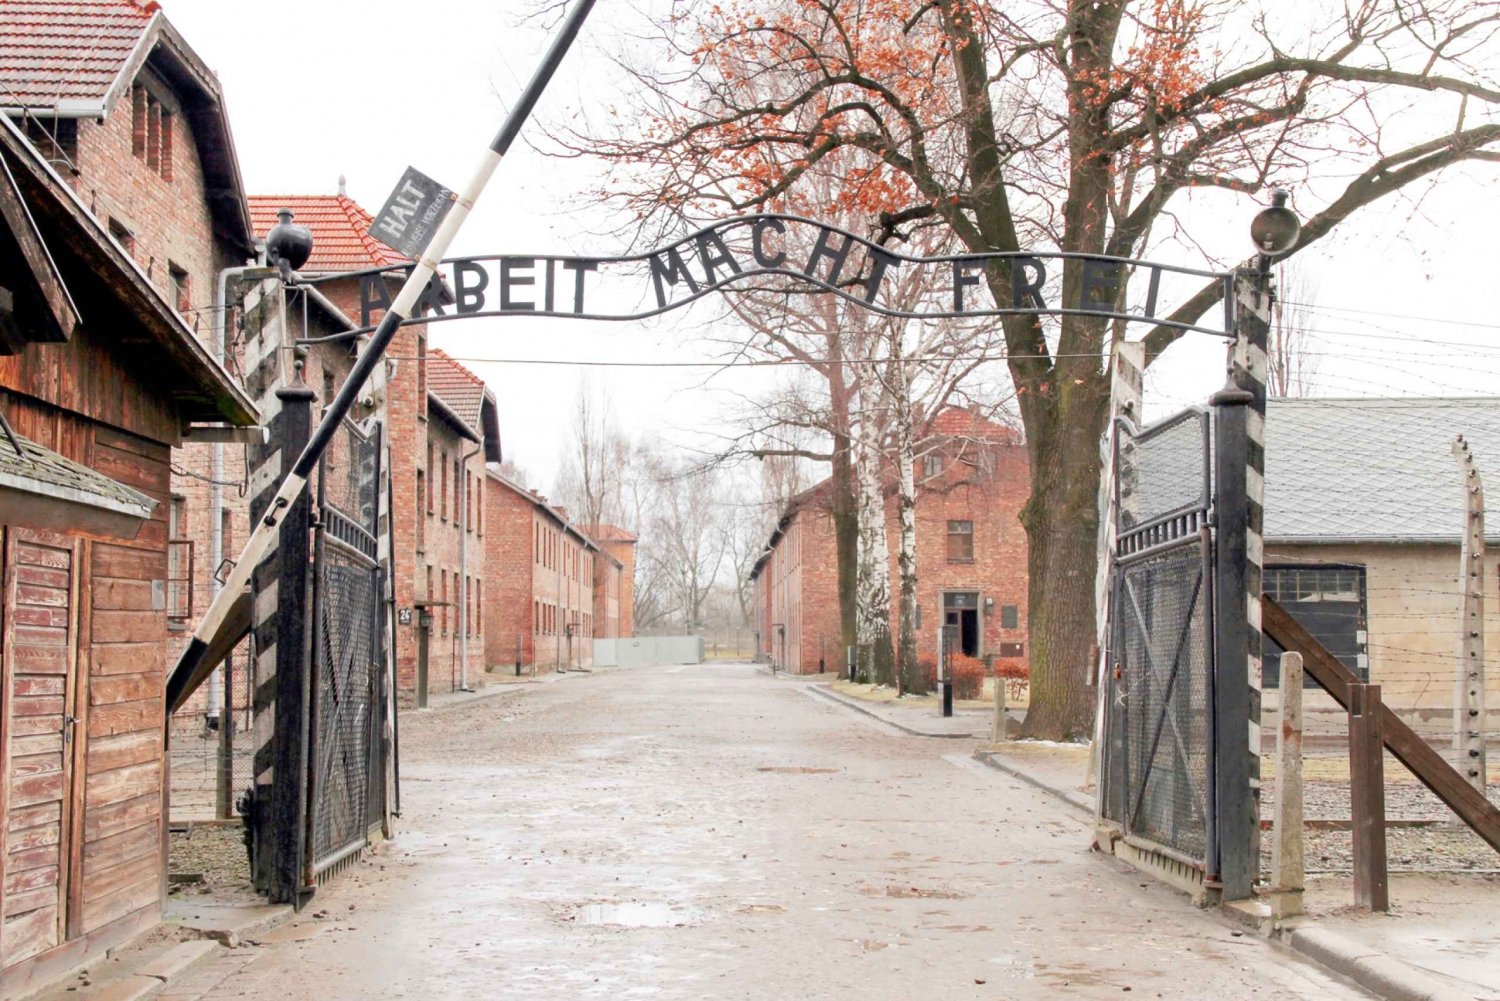 Krakow: Auschwitz-Birkenau and Salt Mine Guided Tour